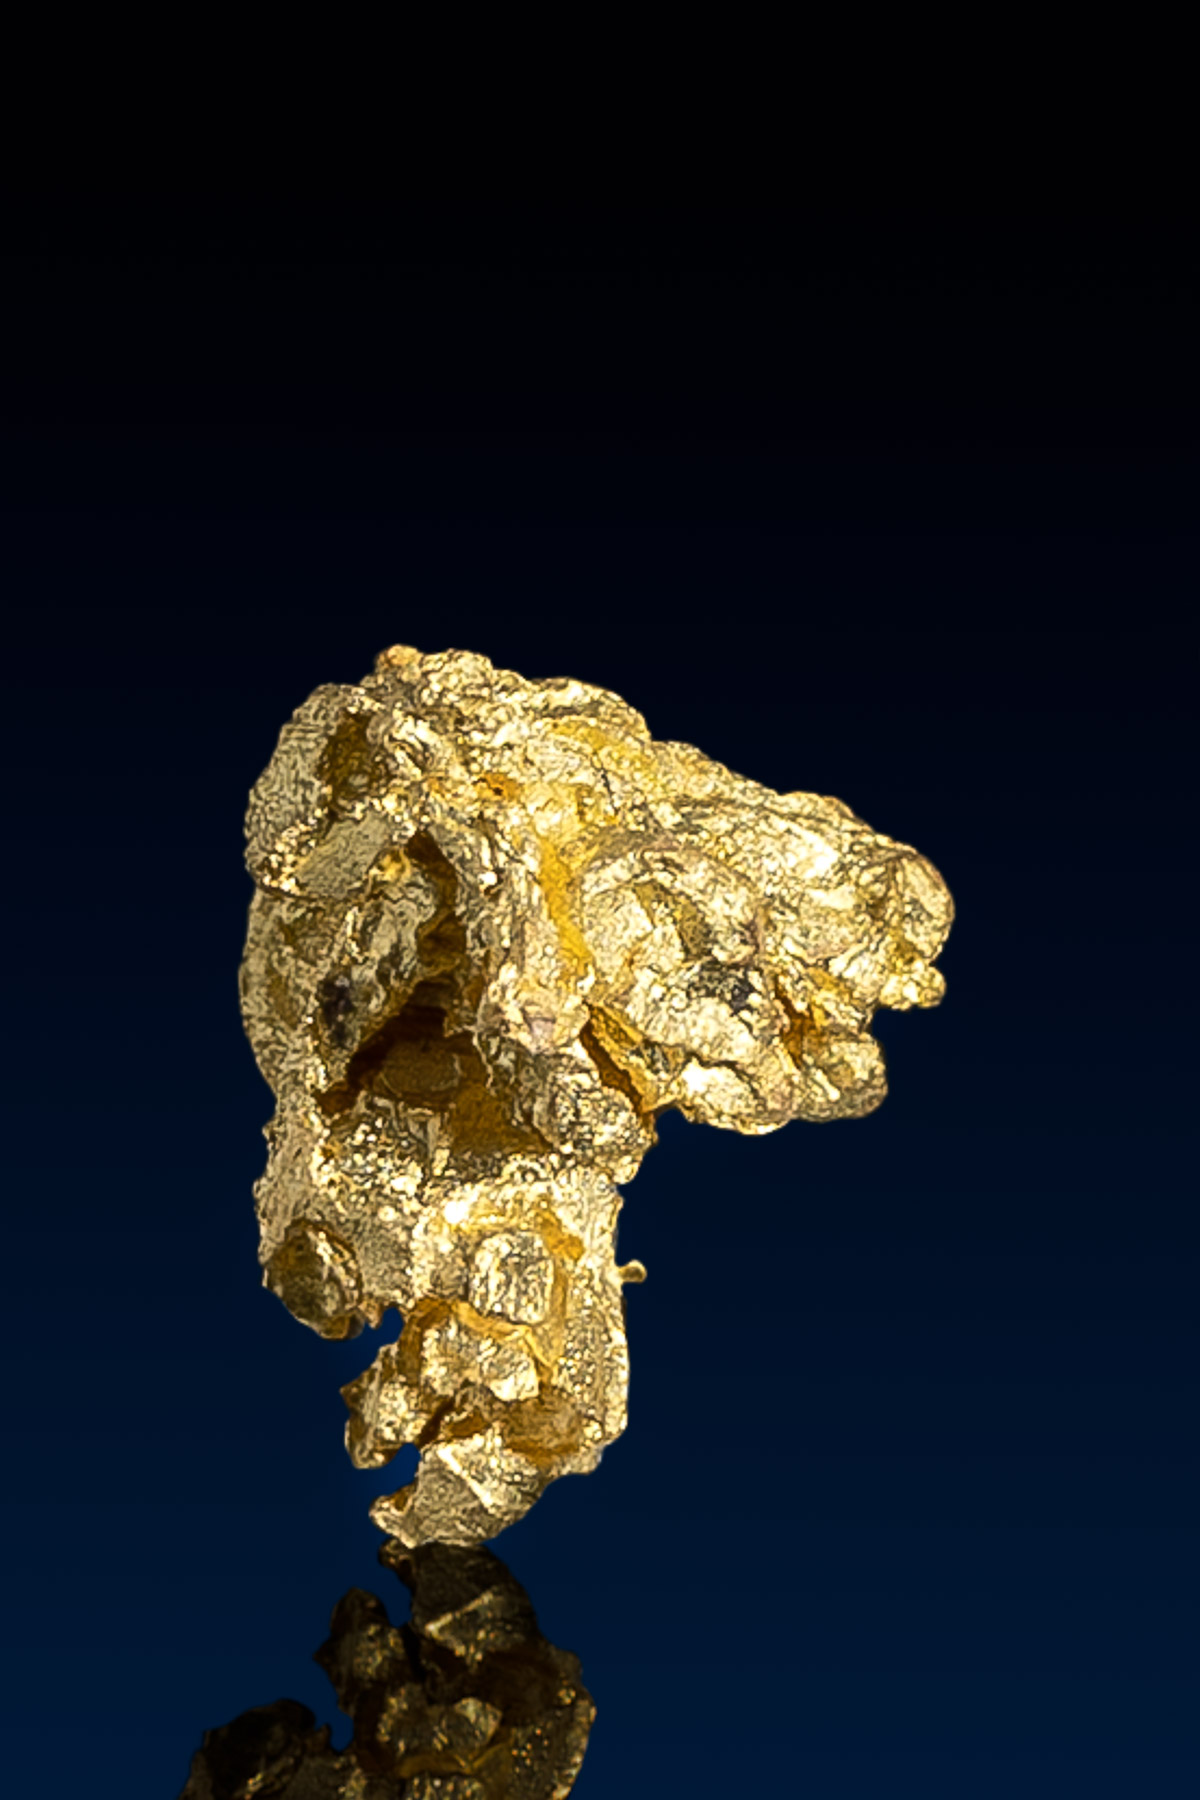 Dog-headed Natural Nevada Gold Nugget - 1.01 grams